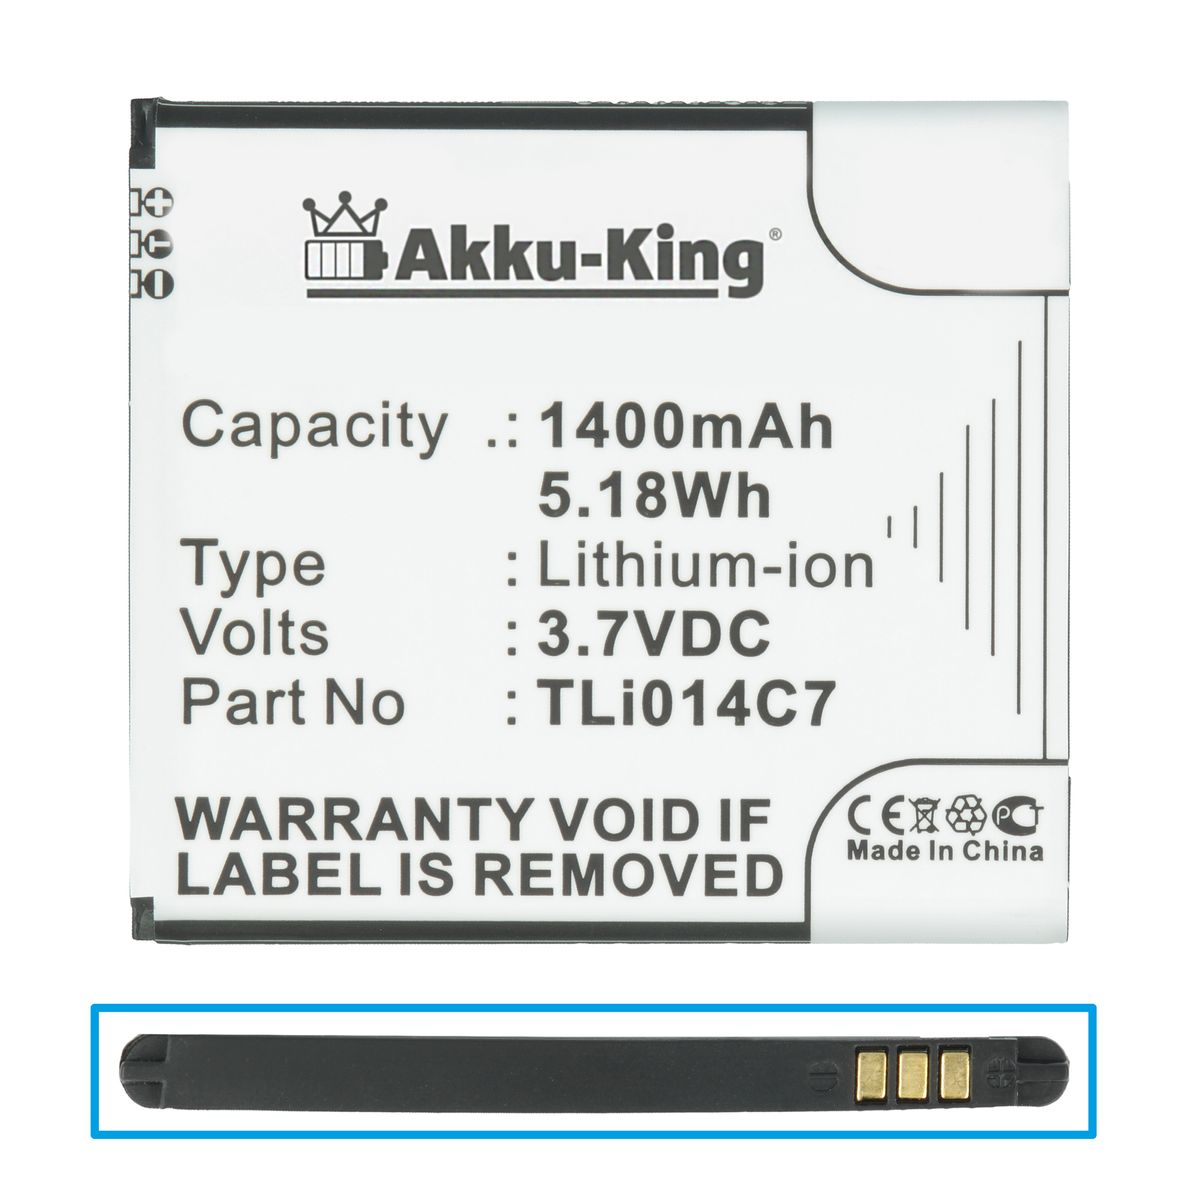 AKKU-KING Akku für Li-Ion Volt, 1400mAh Handy-Akku, TLi014C7 Alcatel 3.7